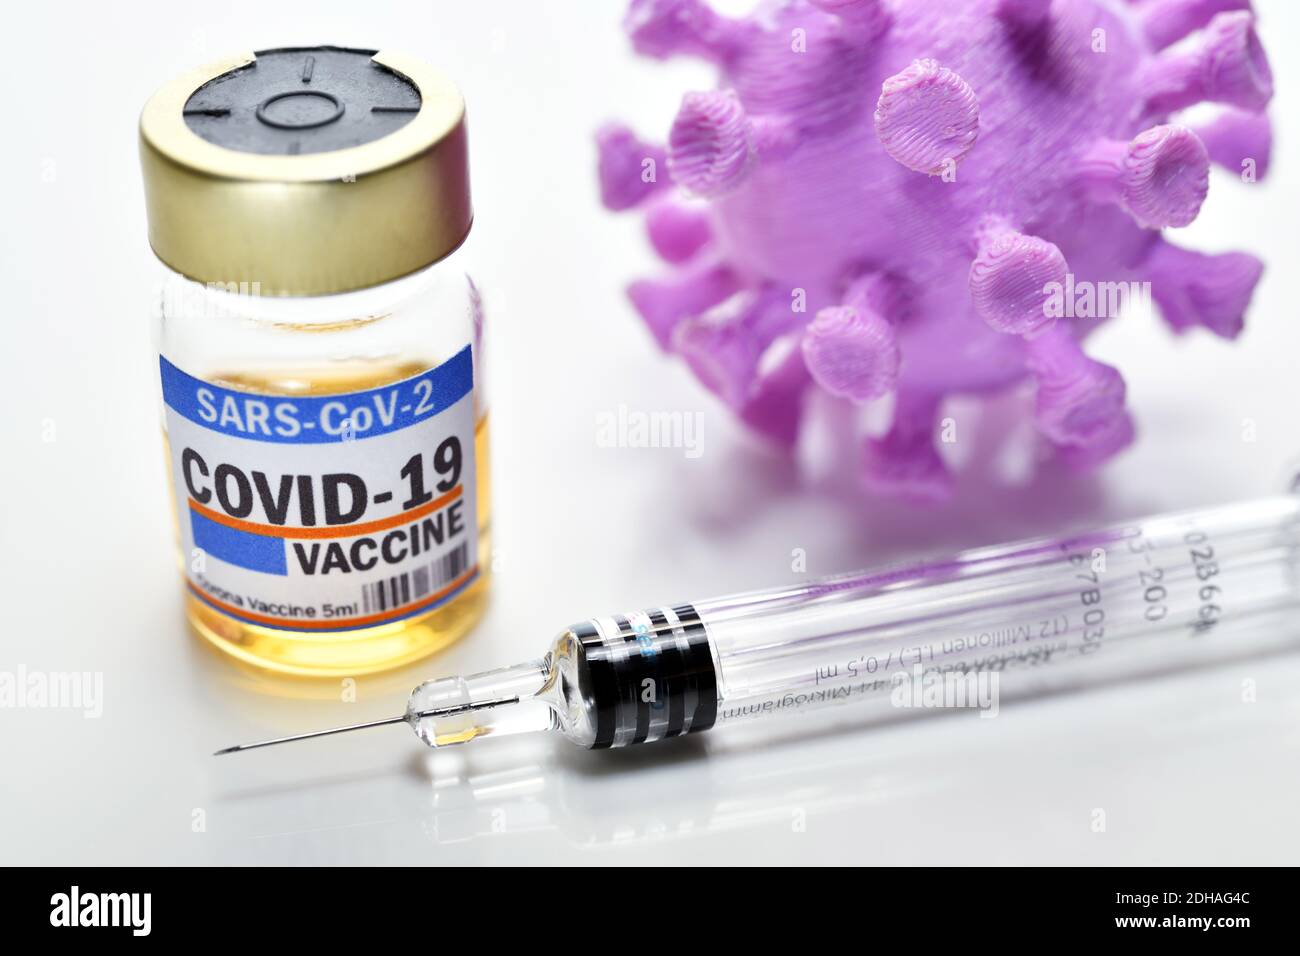 Corona-Impfstoff, Impfspritze und Coronavirus-Modell, Symbolfoto Corona-Impfmittel Stock Photo